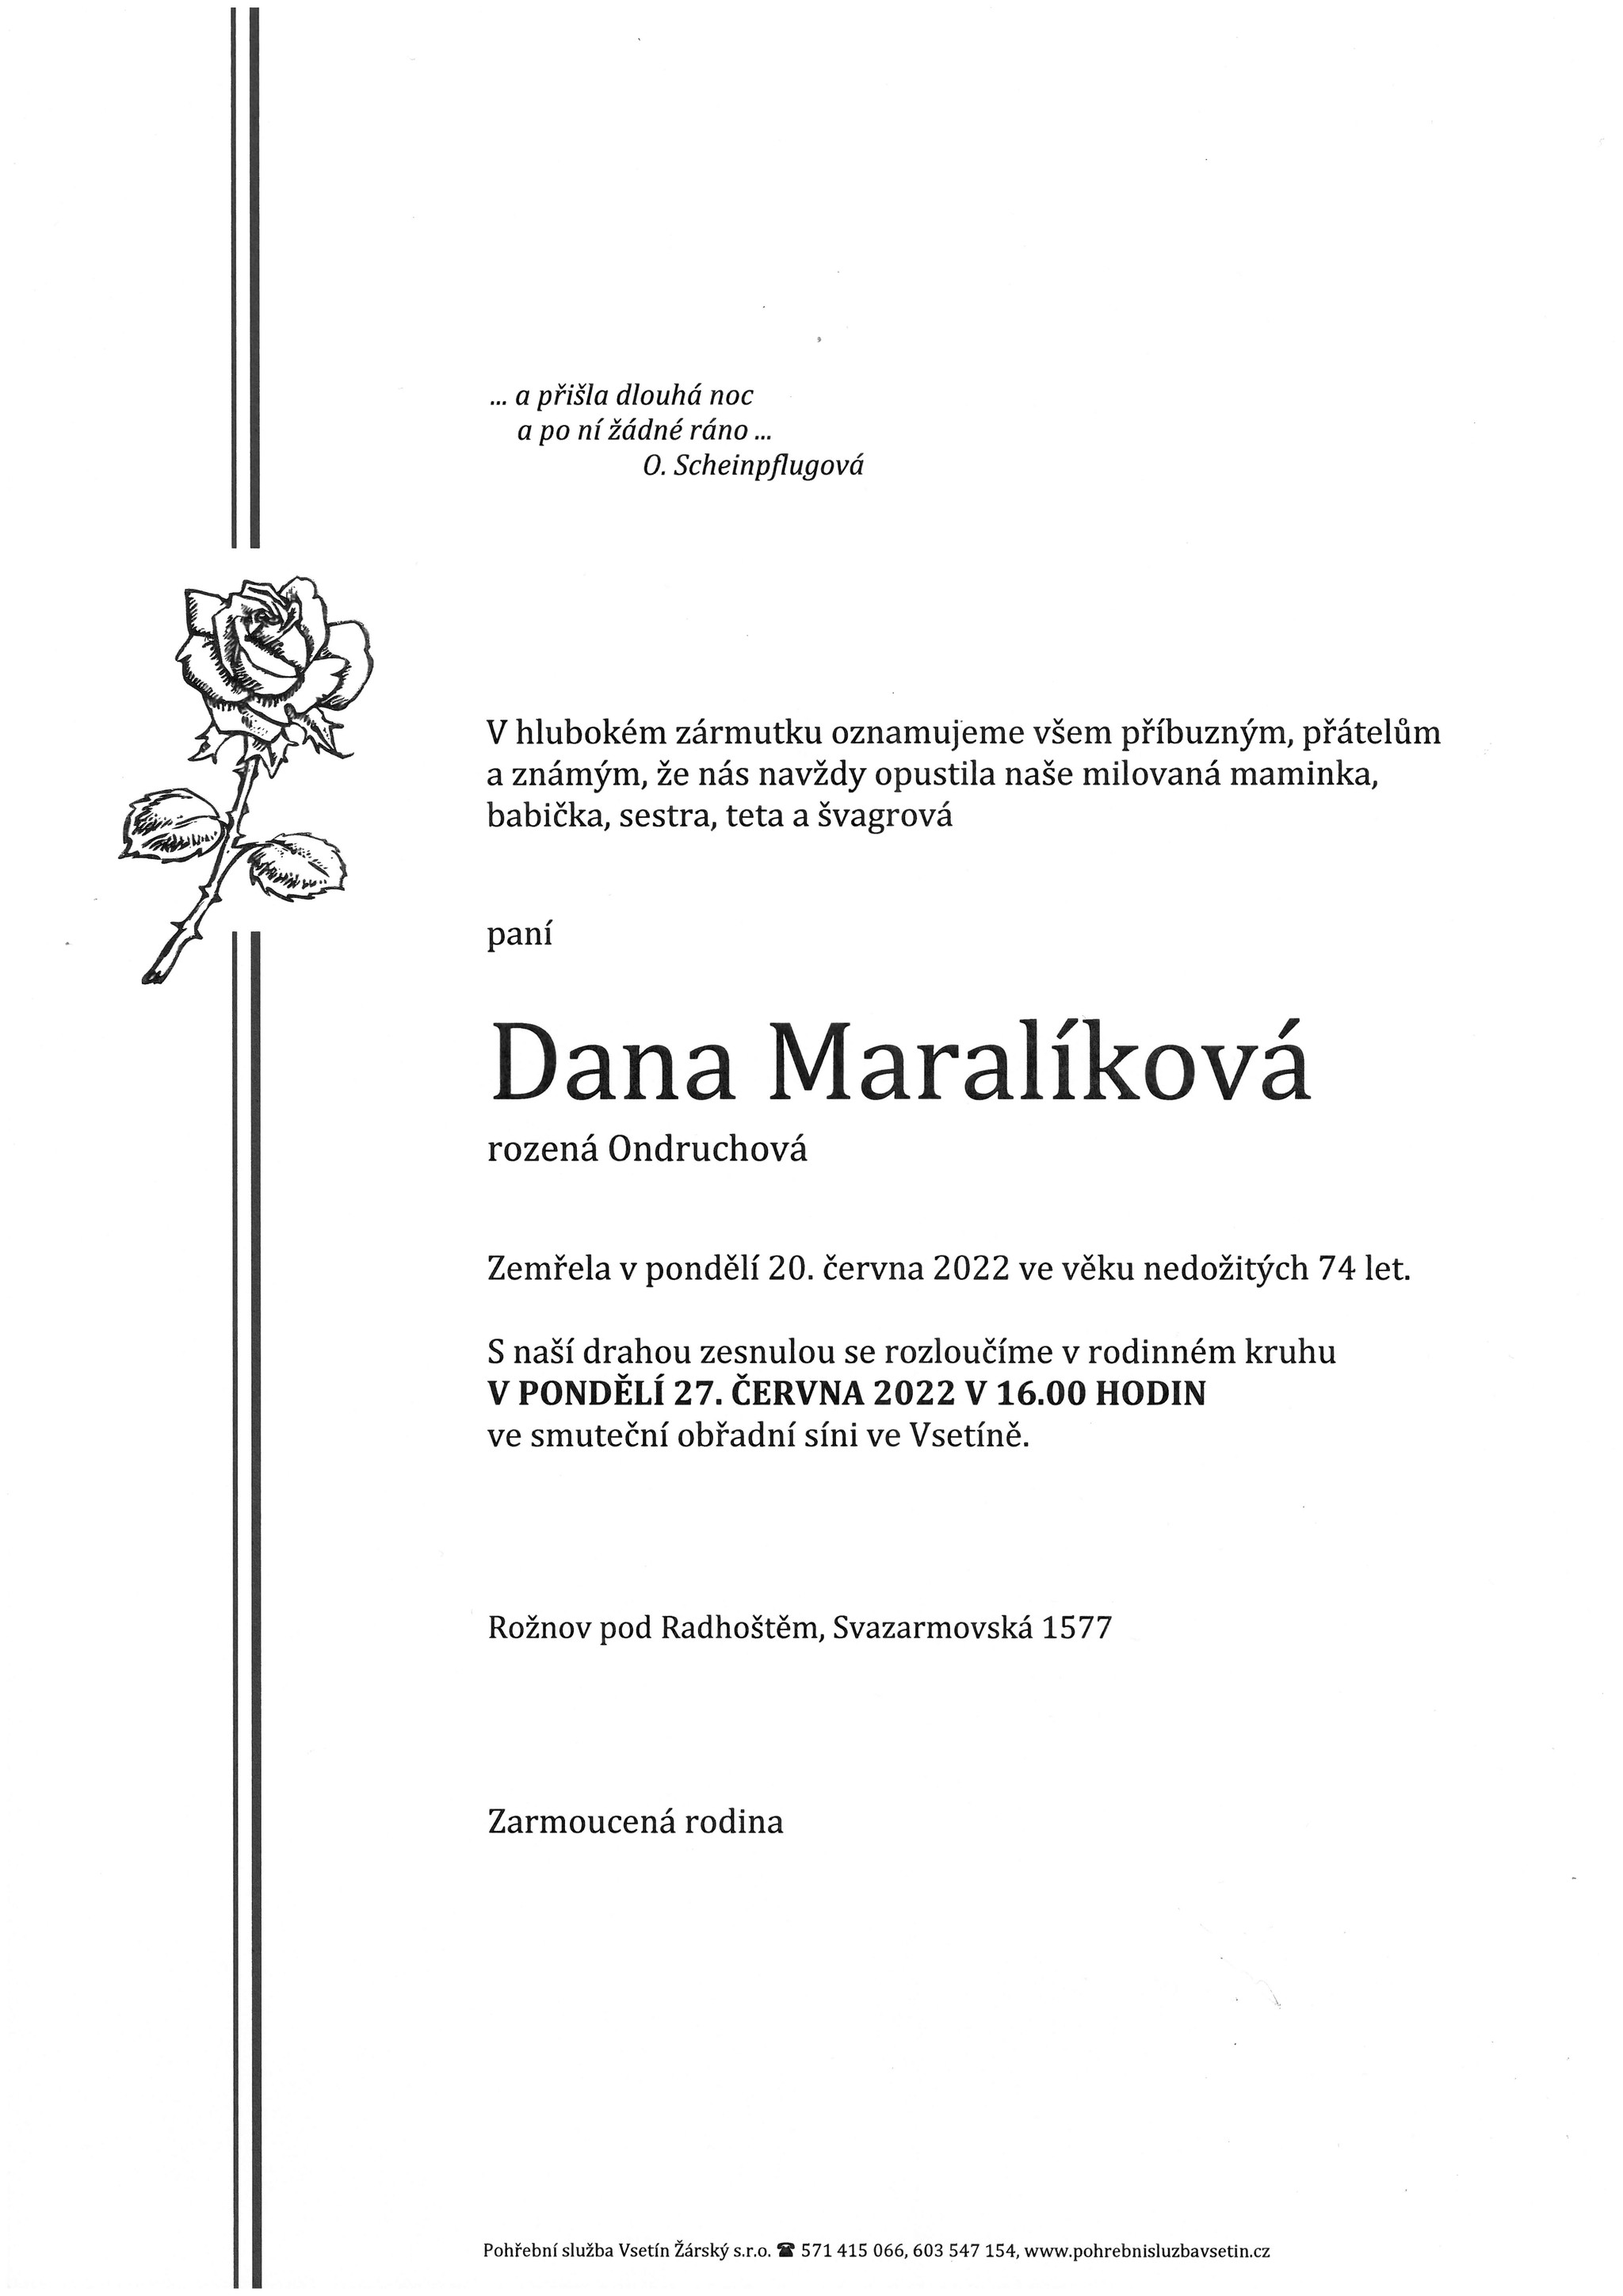 Dana Maralíková